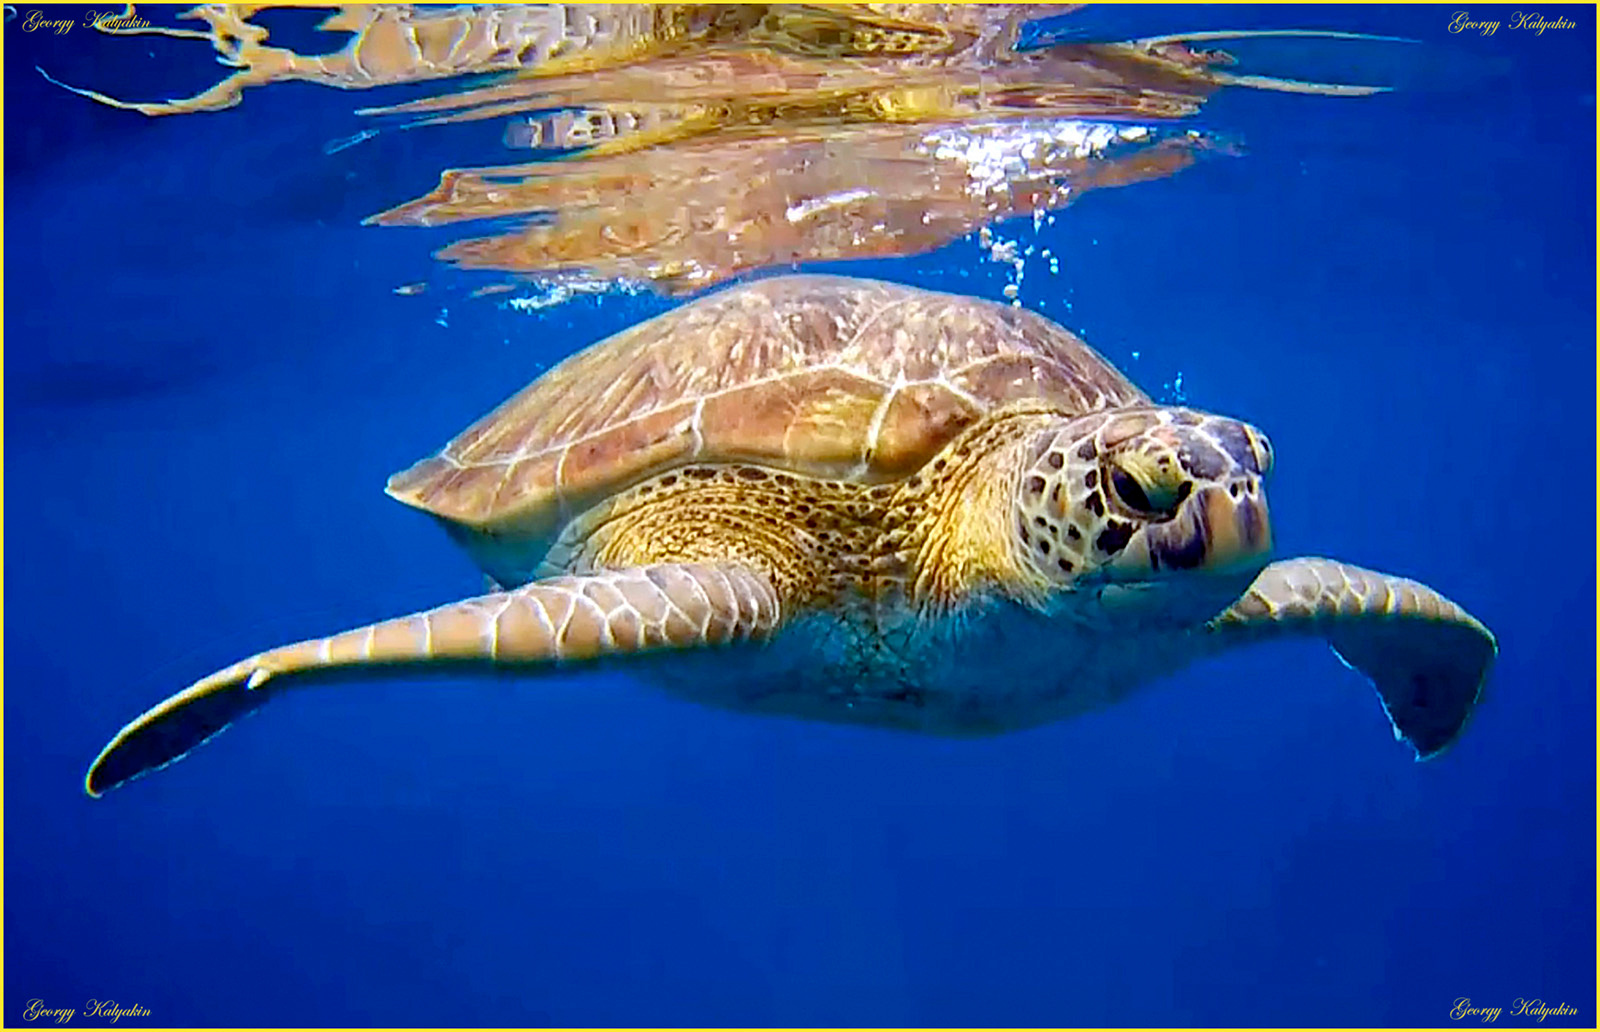 Big turtle вода под черепаха большая плавать синий океан